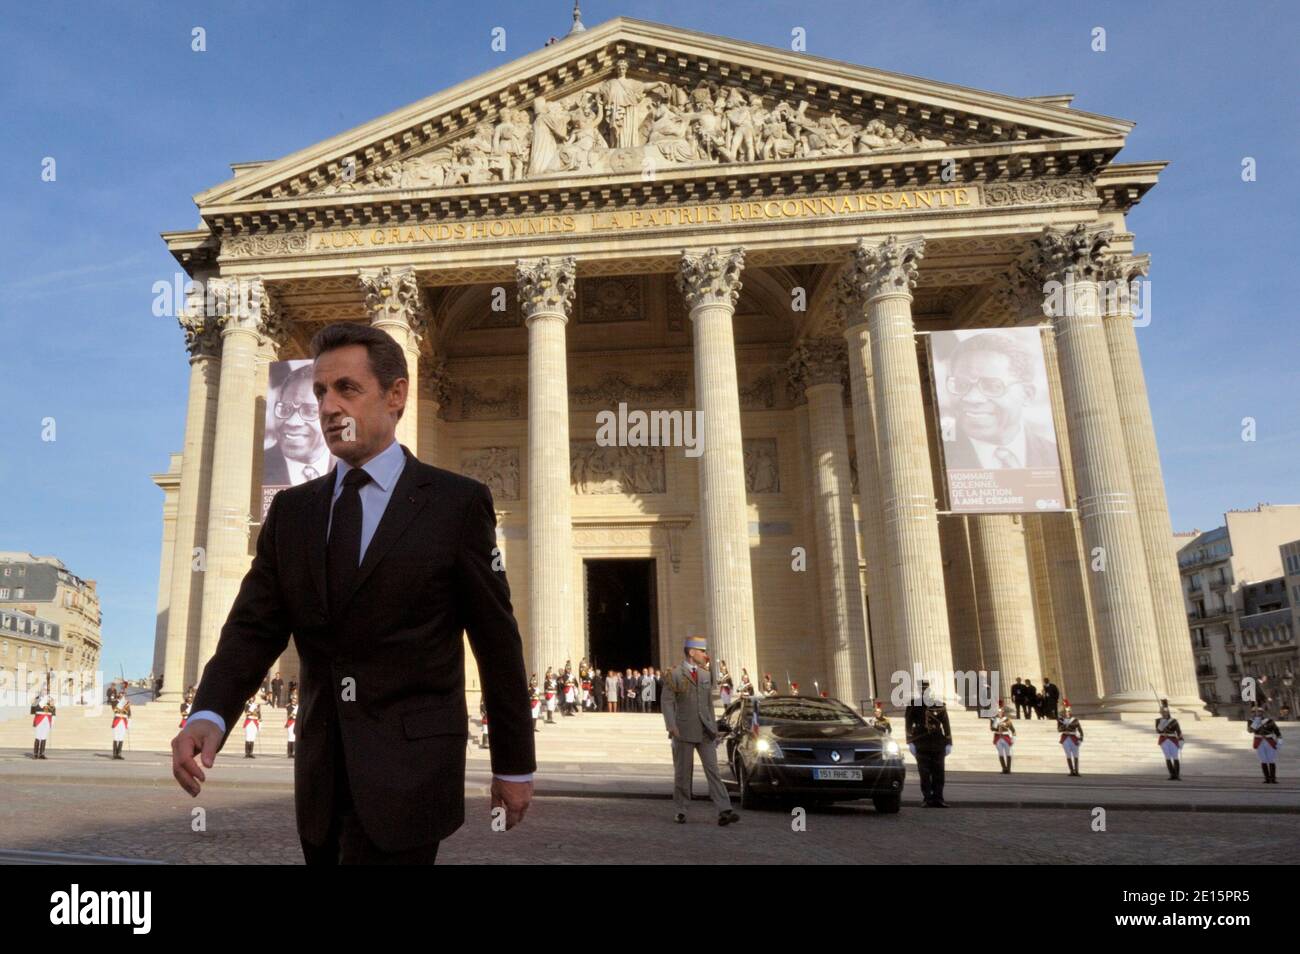 Frankreichs Präsident Nicolas Sarkozy geht vor dem Pantheon in Paris nach einer nationalen Hommage an die verstorbene Dichterin und Politikerin Aime Cesaire, geboren am 6. April 2011 auf der französischen Karibikinsel La Martinique, Frankreich. Foto von Philippe Wojazer/Pool/ABACAPRESS.COM Stockfoto